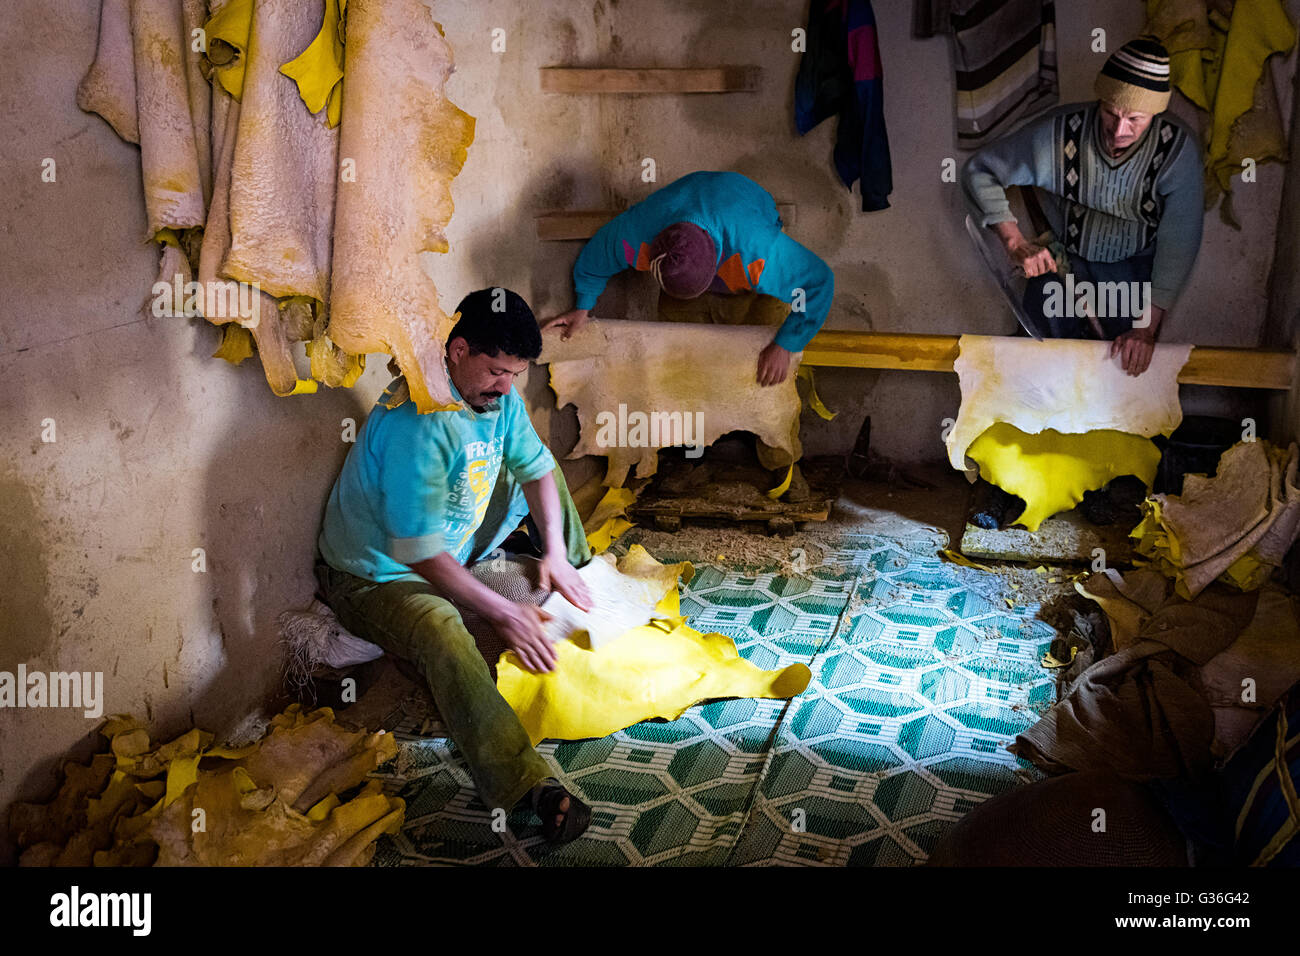 Fes, Marokko - 11. April 2016: Baum-Mann arbeitet in einer Gerberei in der Stadt Fez in Marokko. Stockfoto